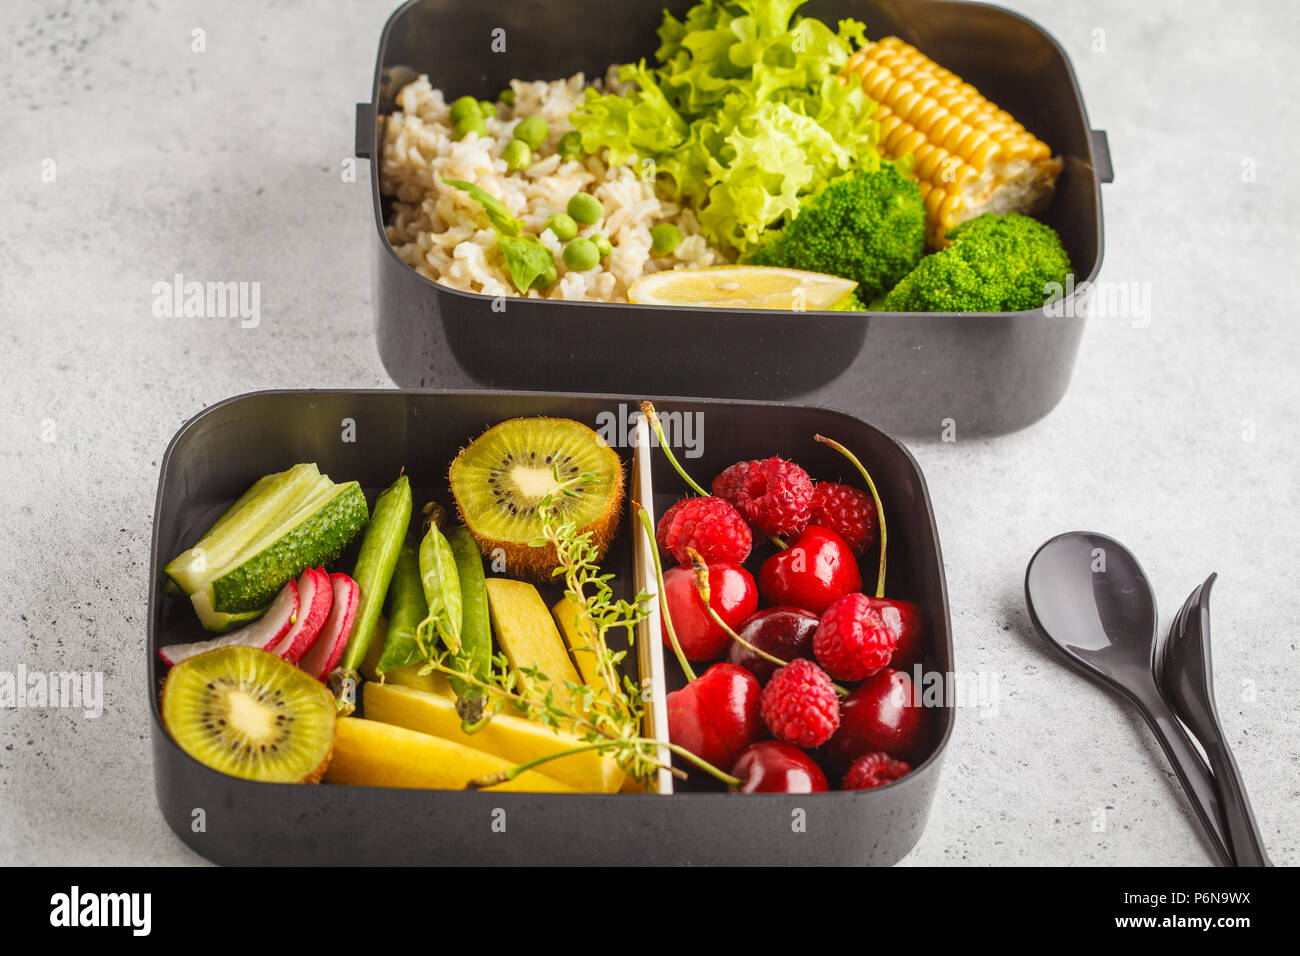 Préparation des repas sains avec des conteneurs de riz brun, le brocoli, les légumes, les fruits et les baies, fond blanc Banque D'Images